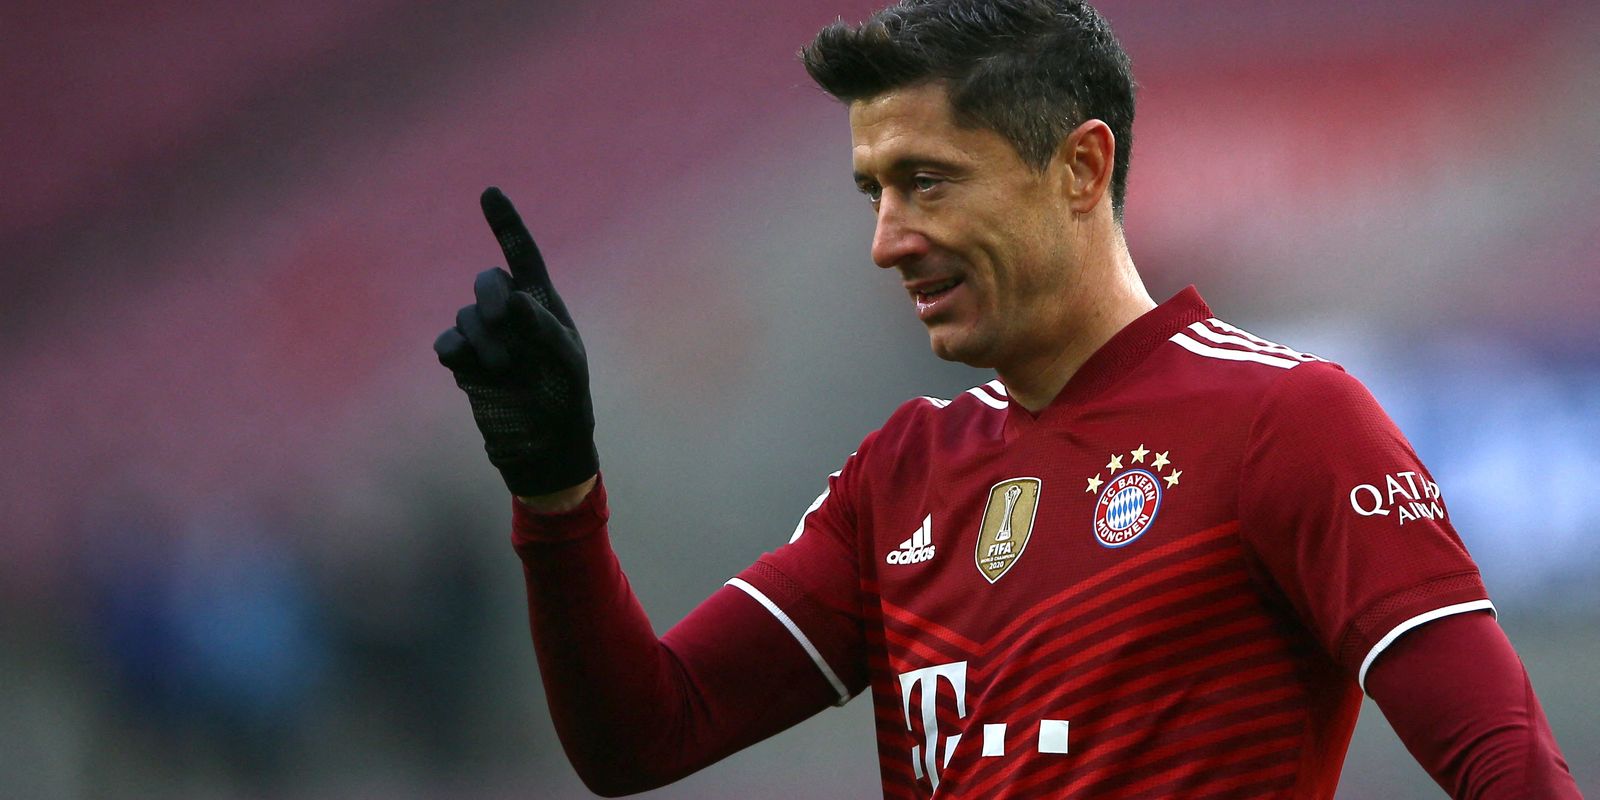 Robert Lewandoswki comemora gol em partida do Bayern de Munique - é eleito melhor do mundo pelo Fifa Best em 17/01/2022